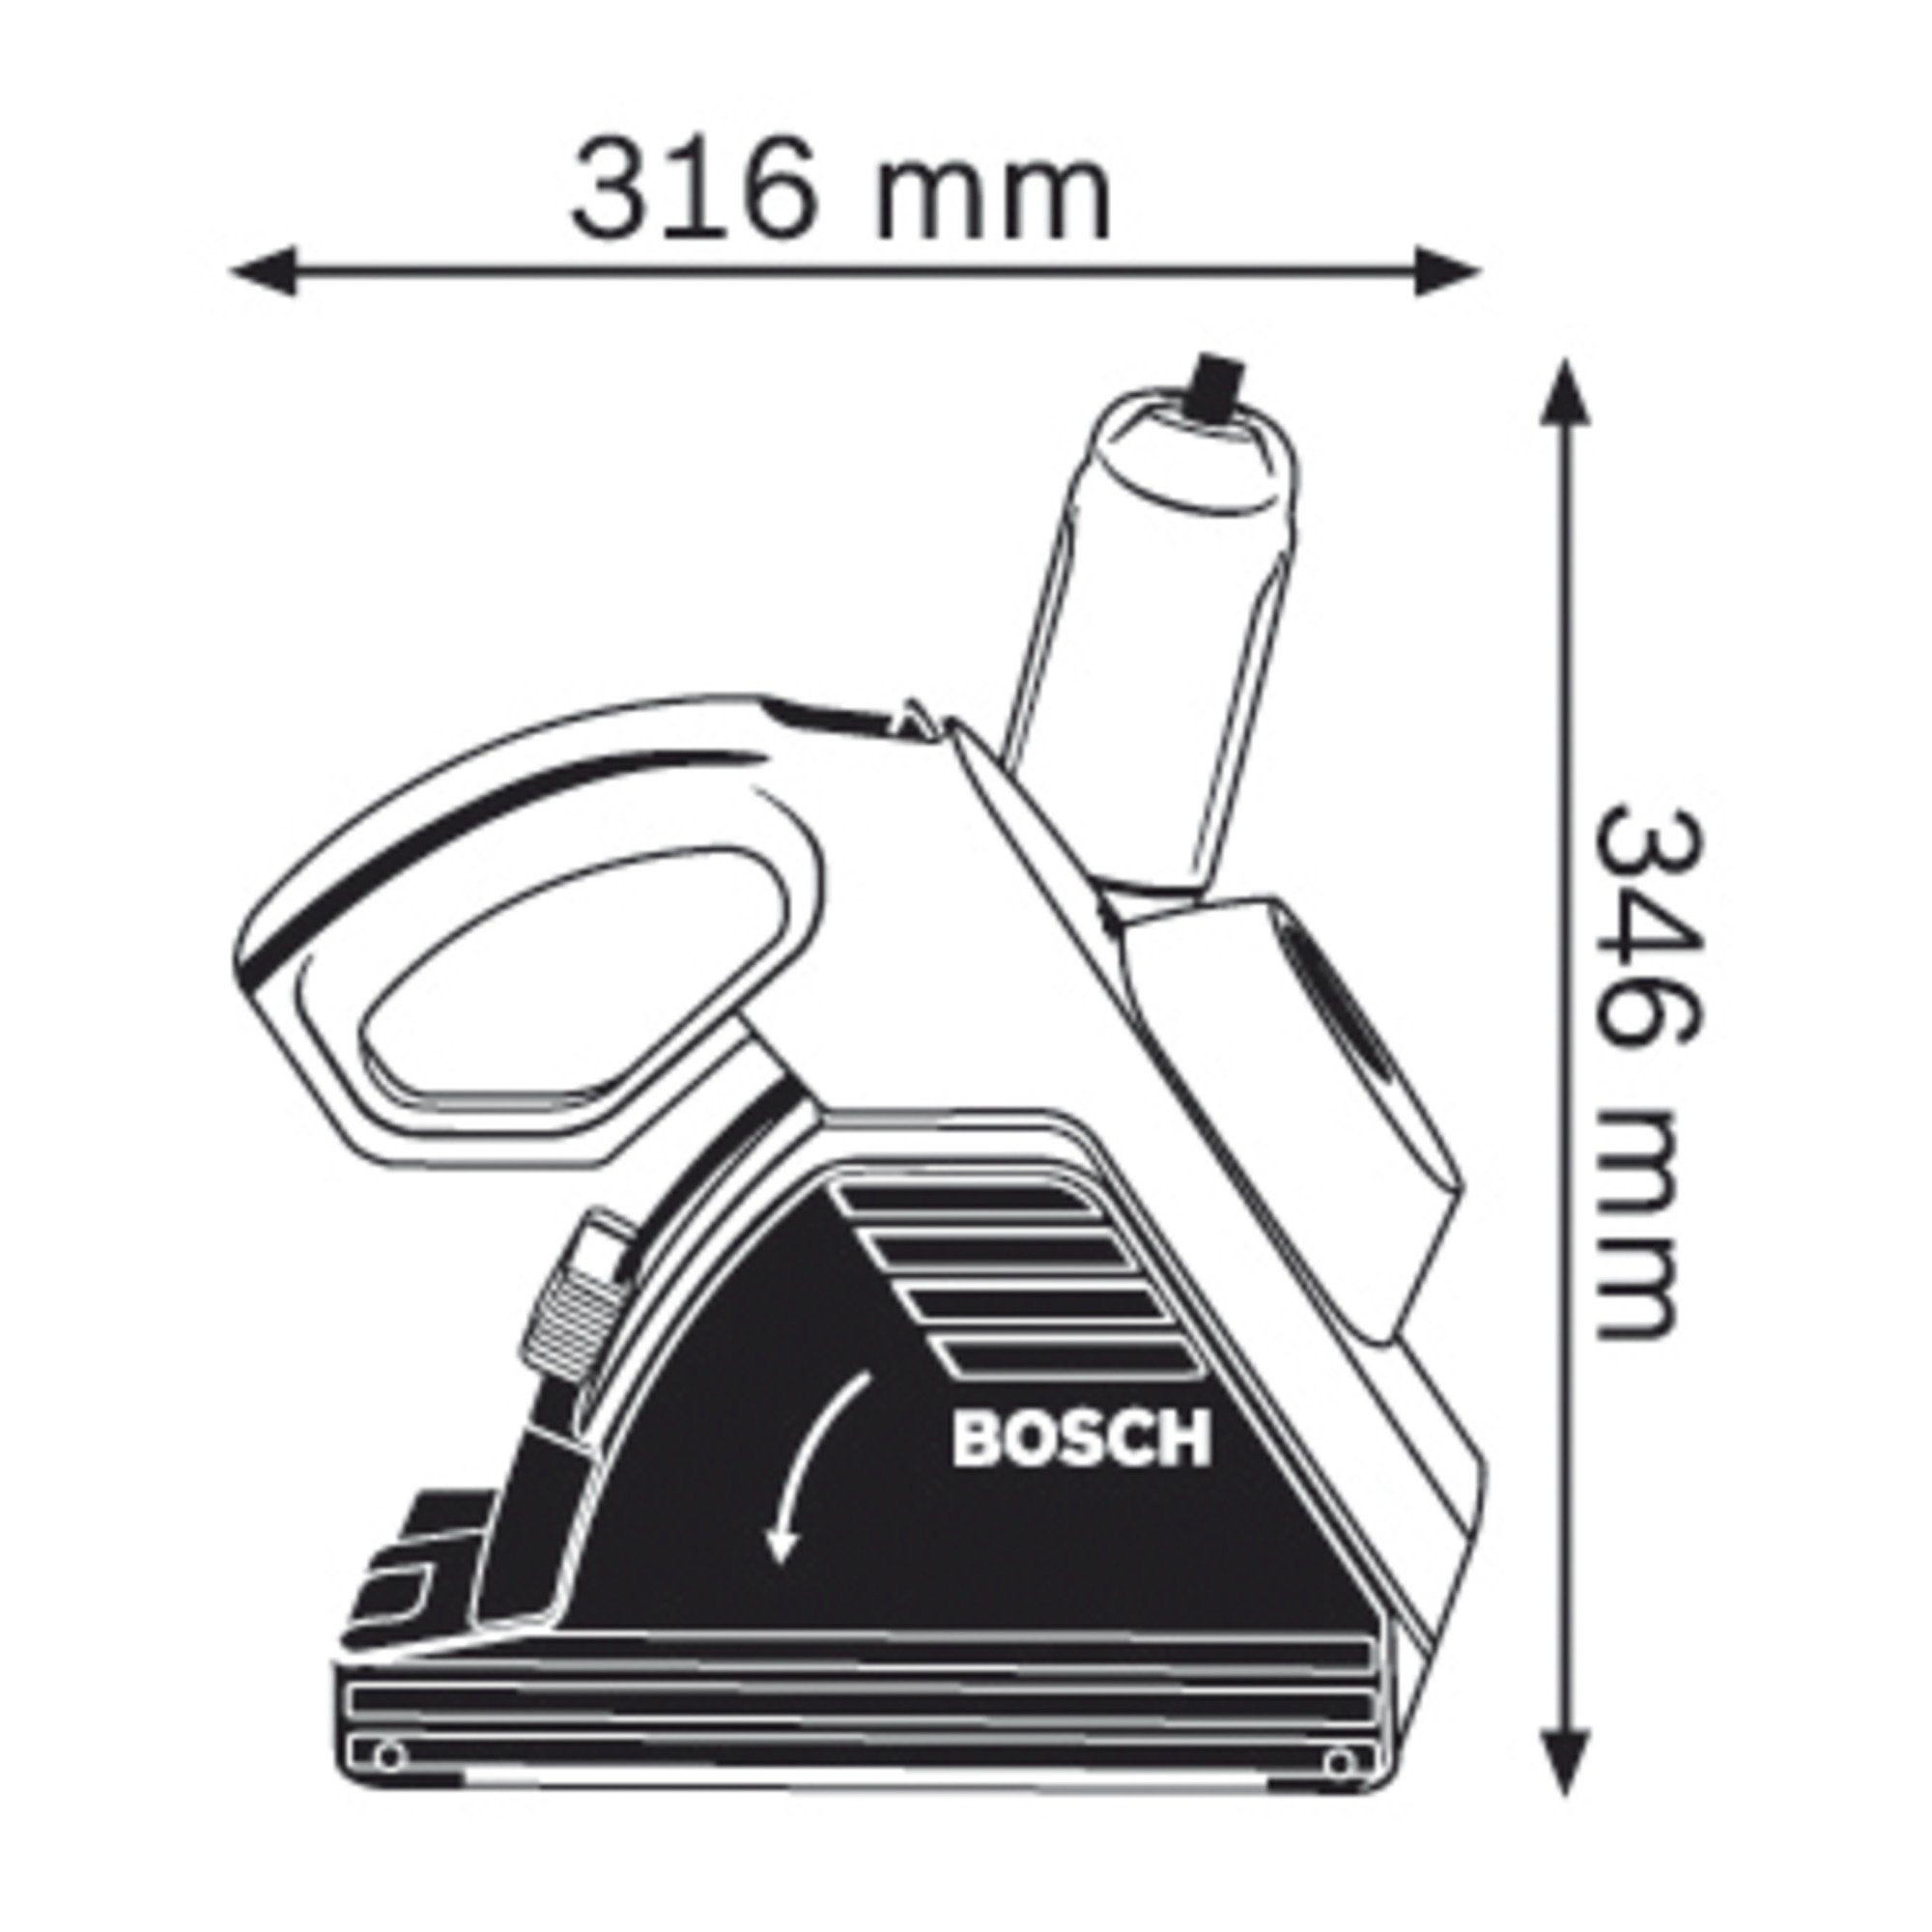 BOSCH Mauernutfräse Bosch Professional Mauer-Nutfräse CA GNF 35